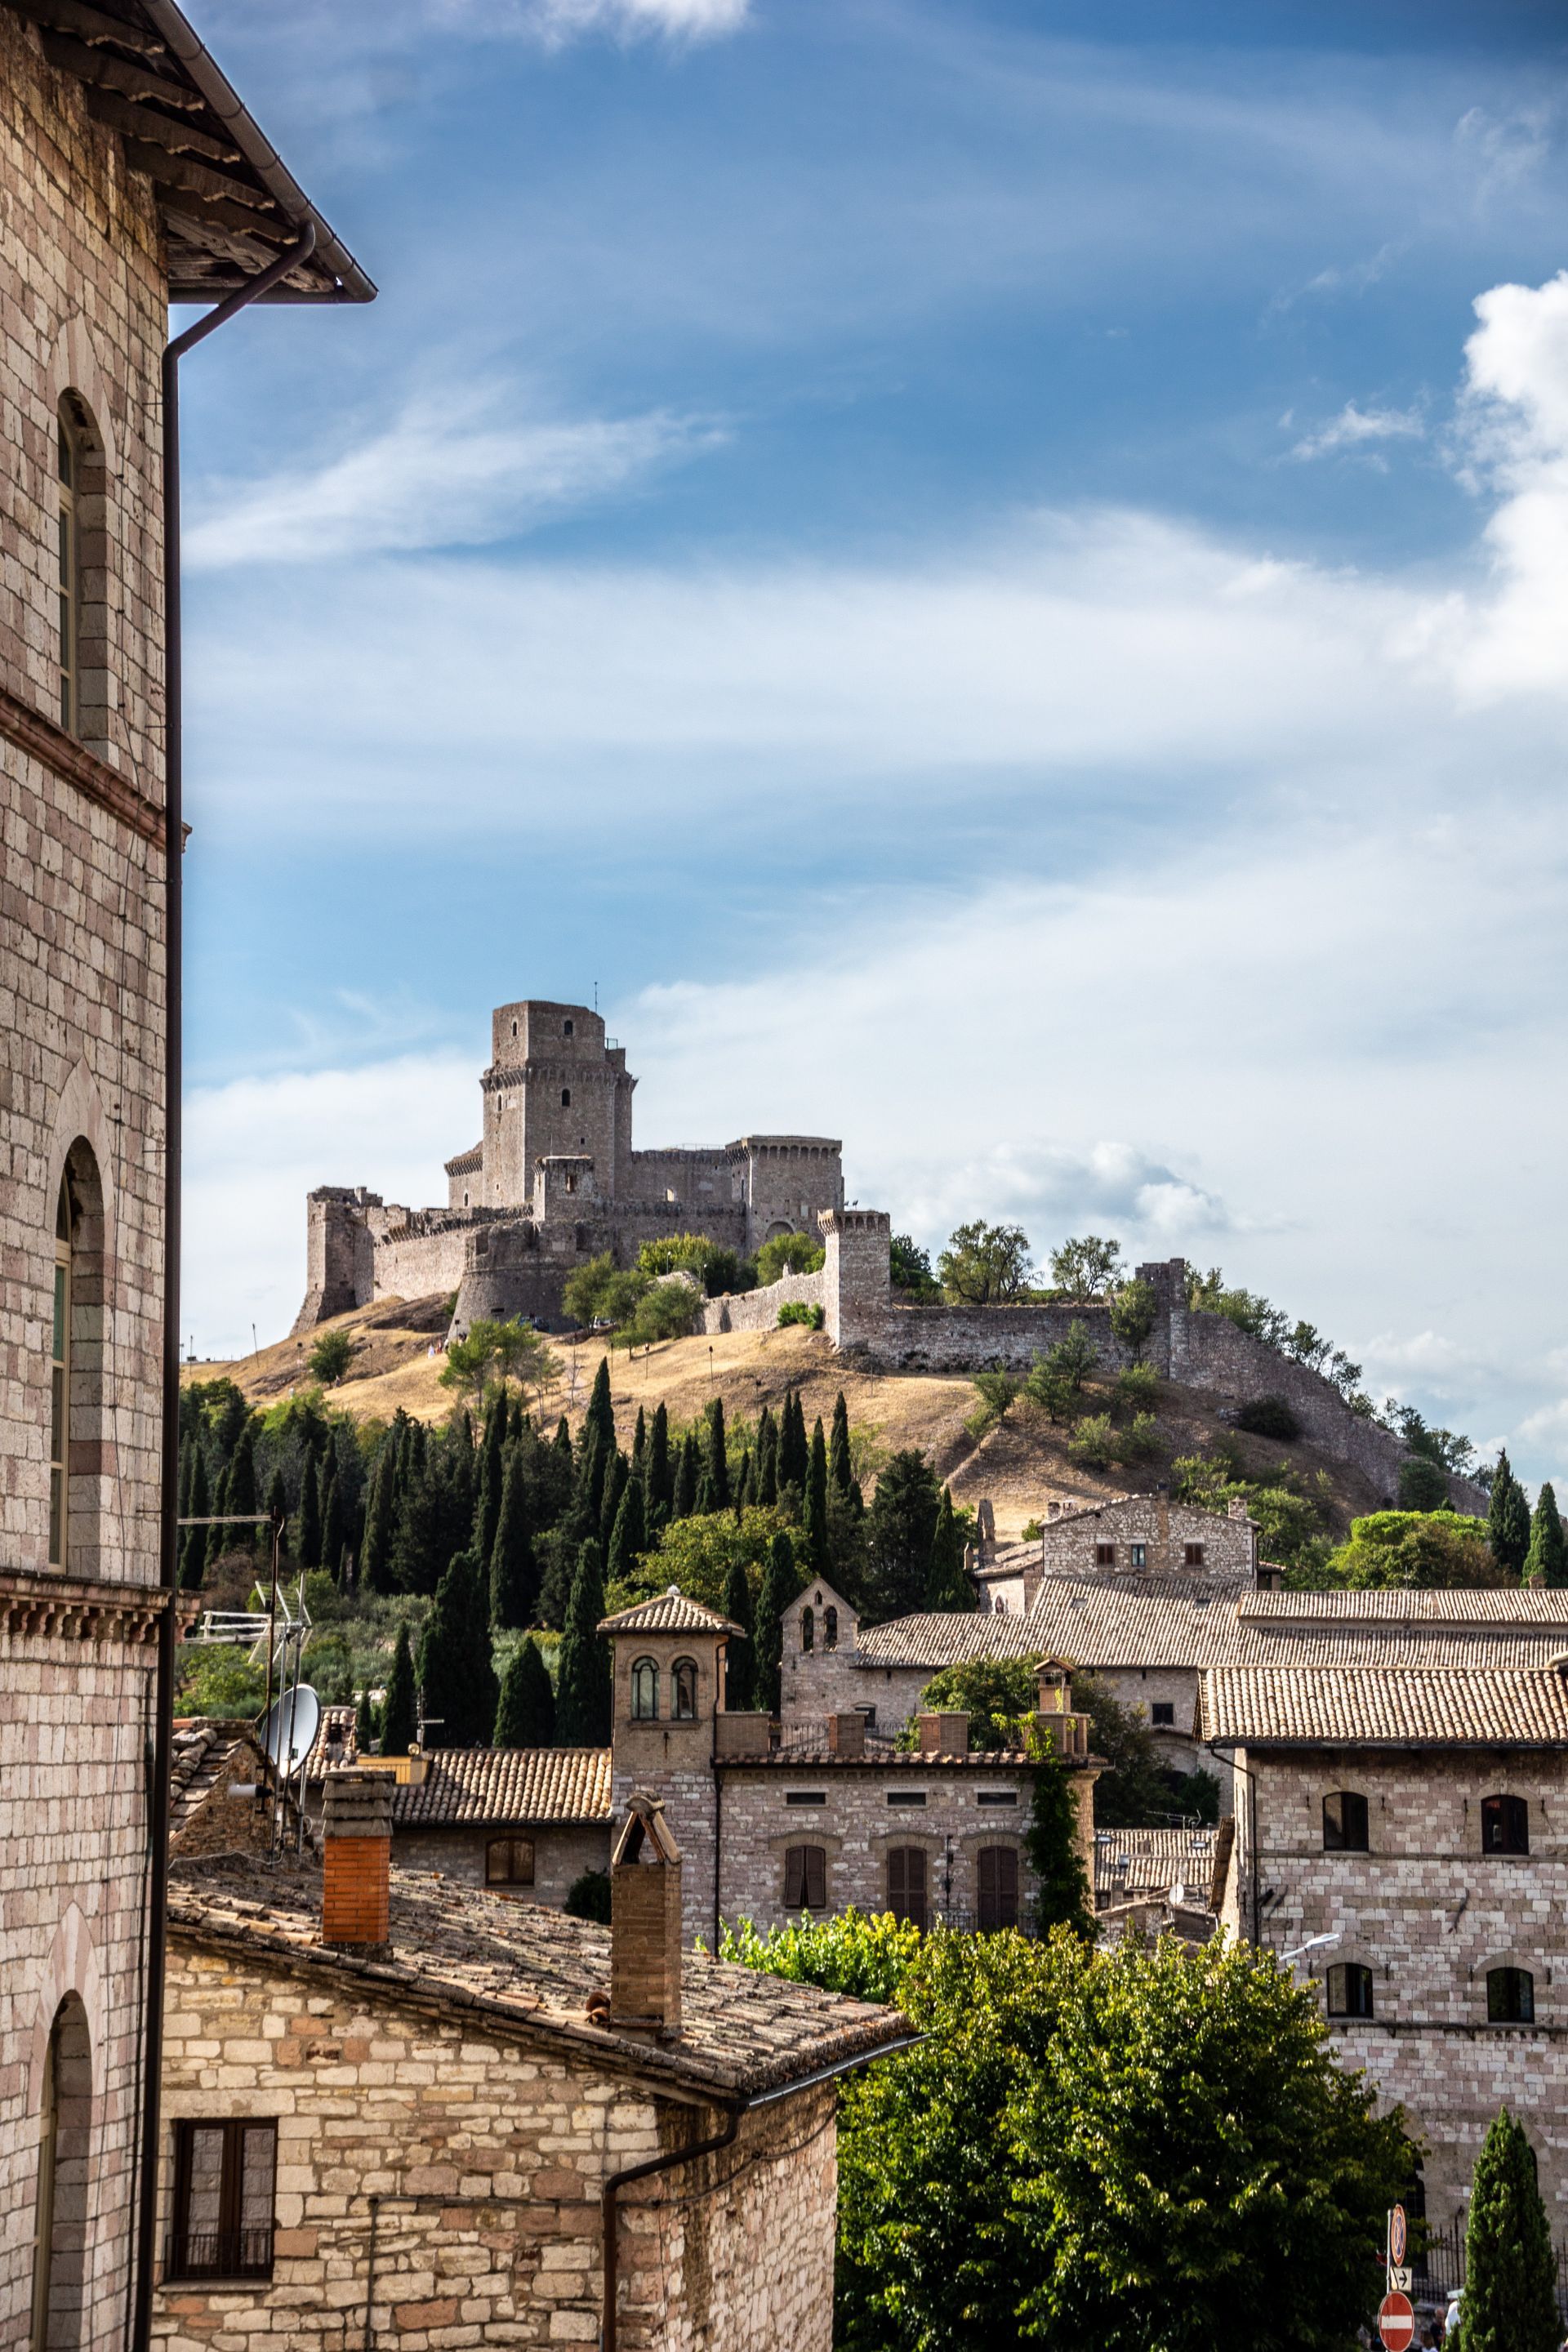 Day trip to Perugia